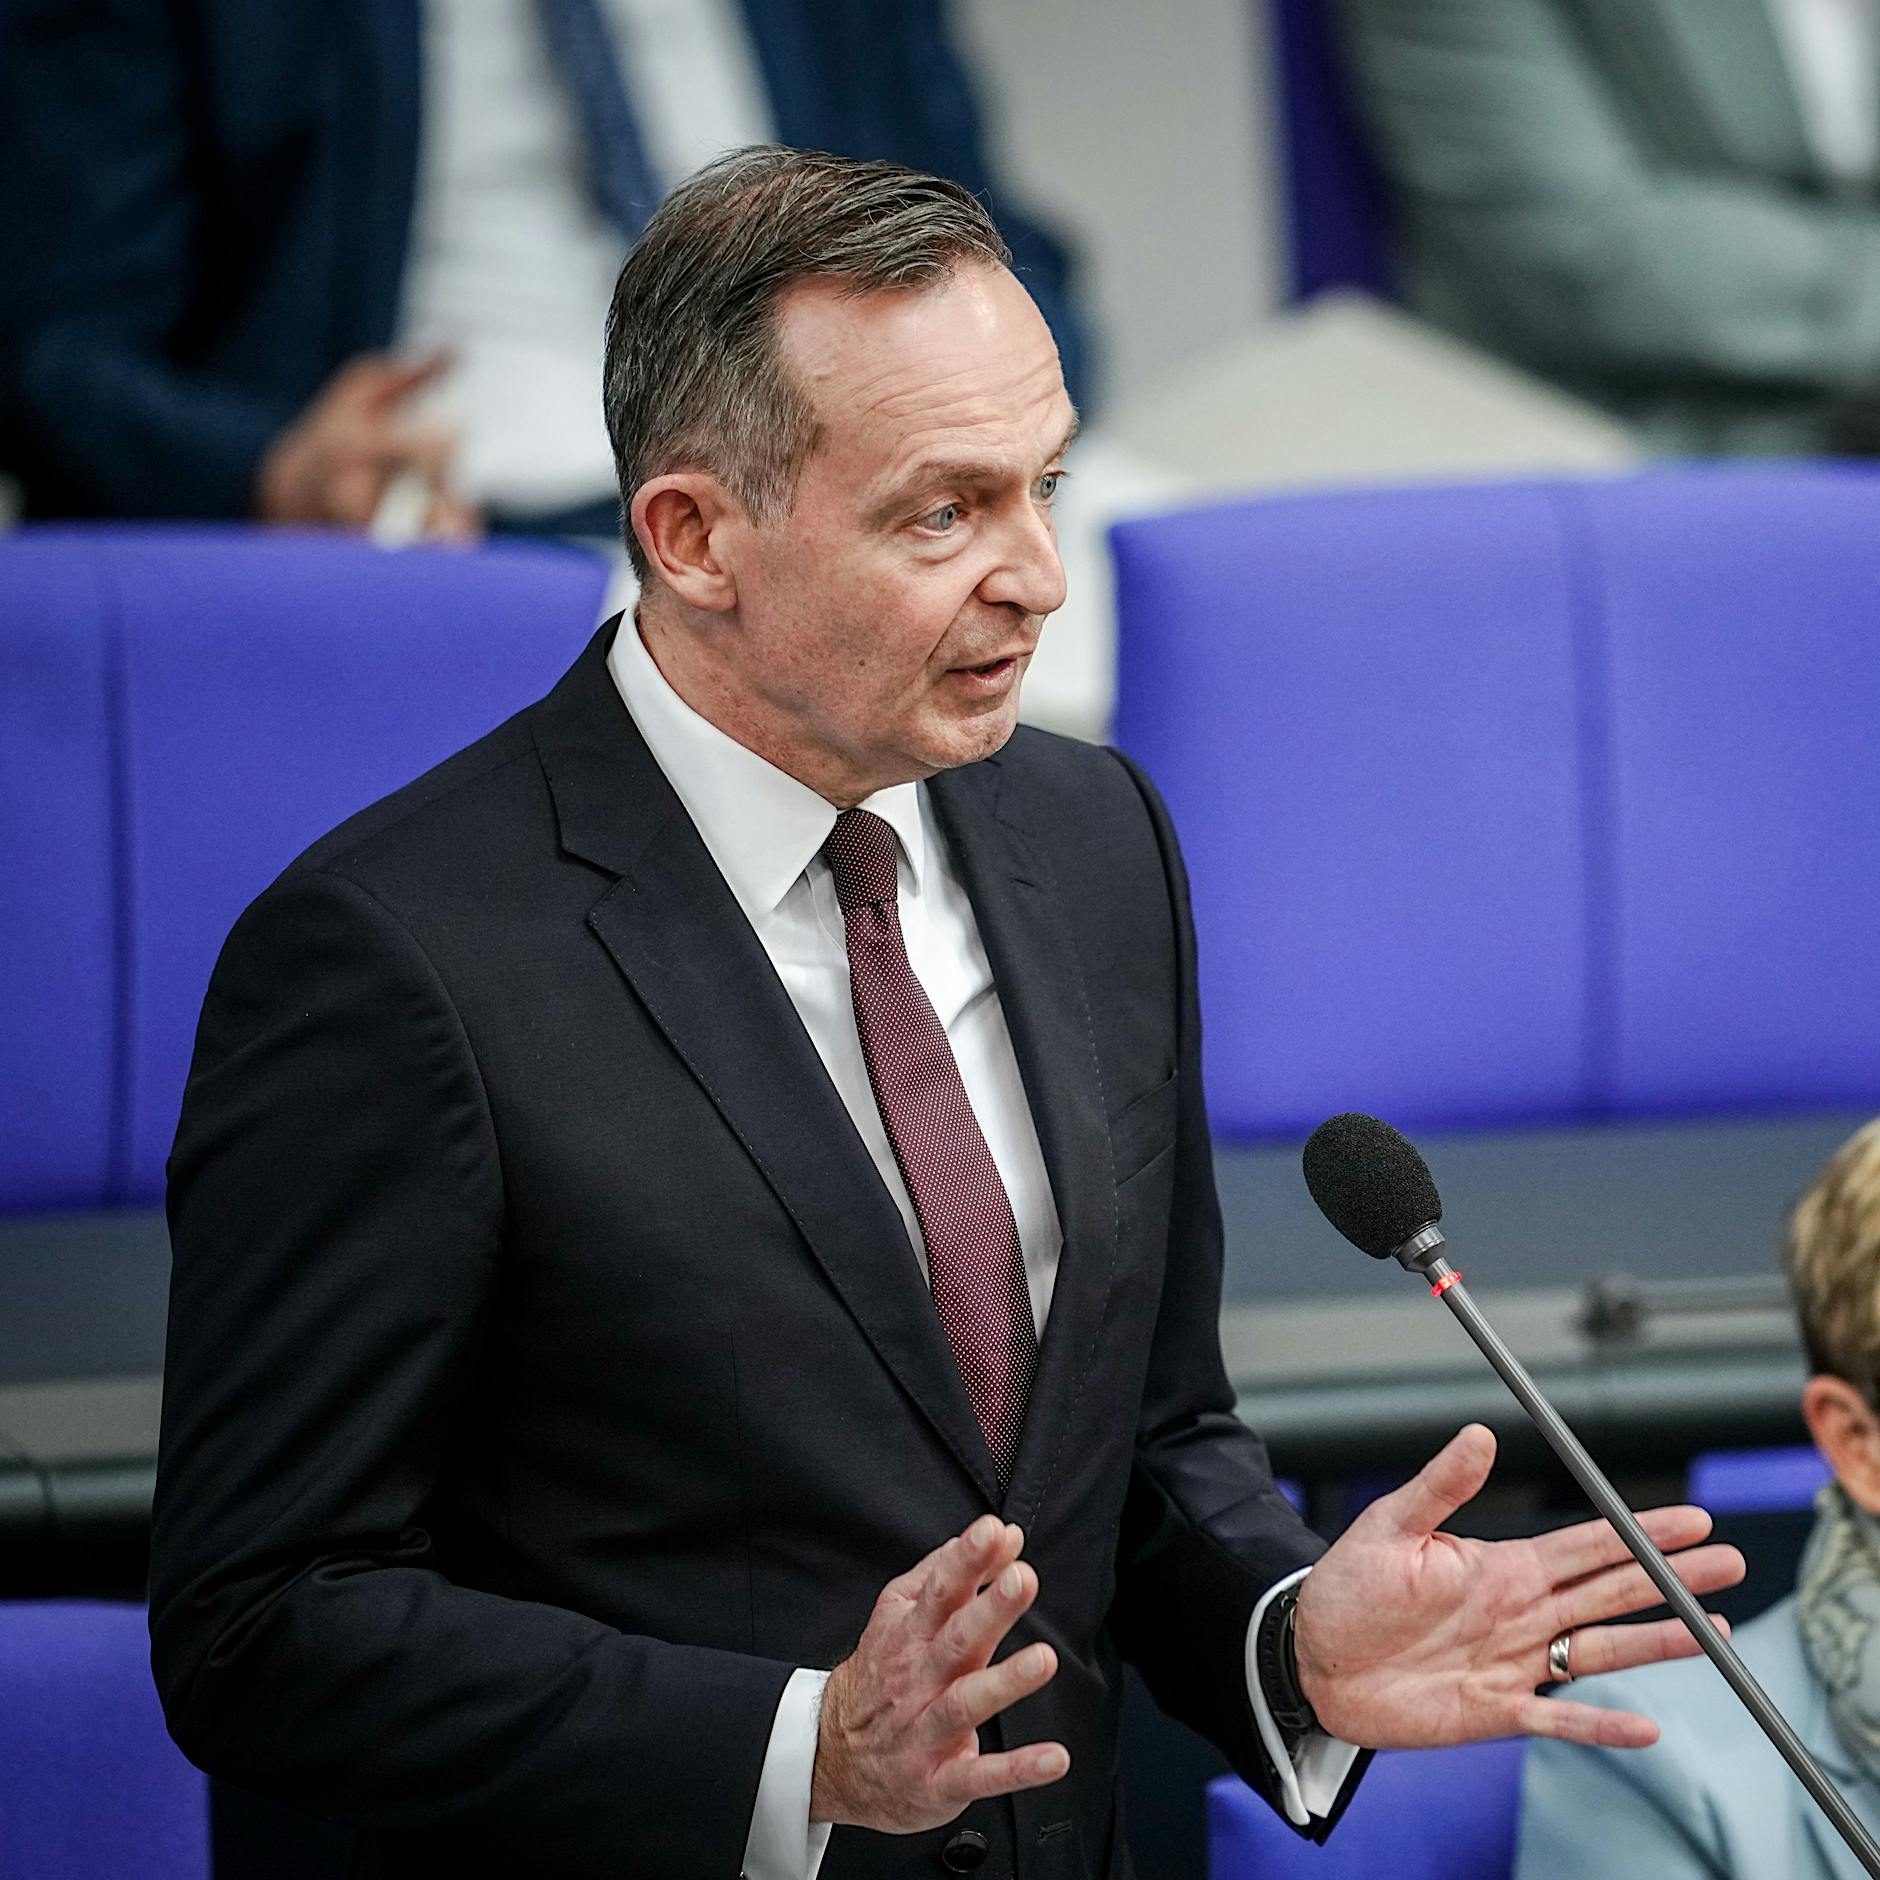 Bundestag beschließt Änderung des Klimaschutzgesetzes